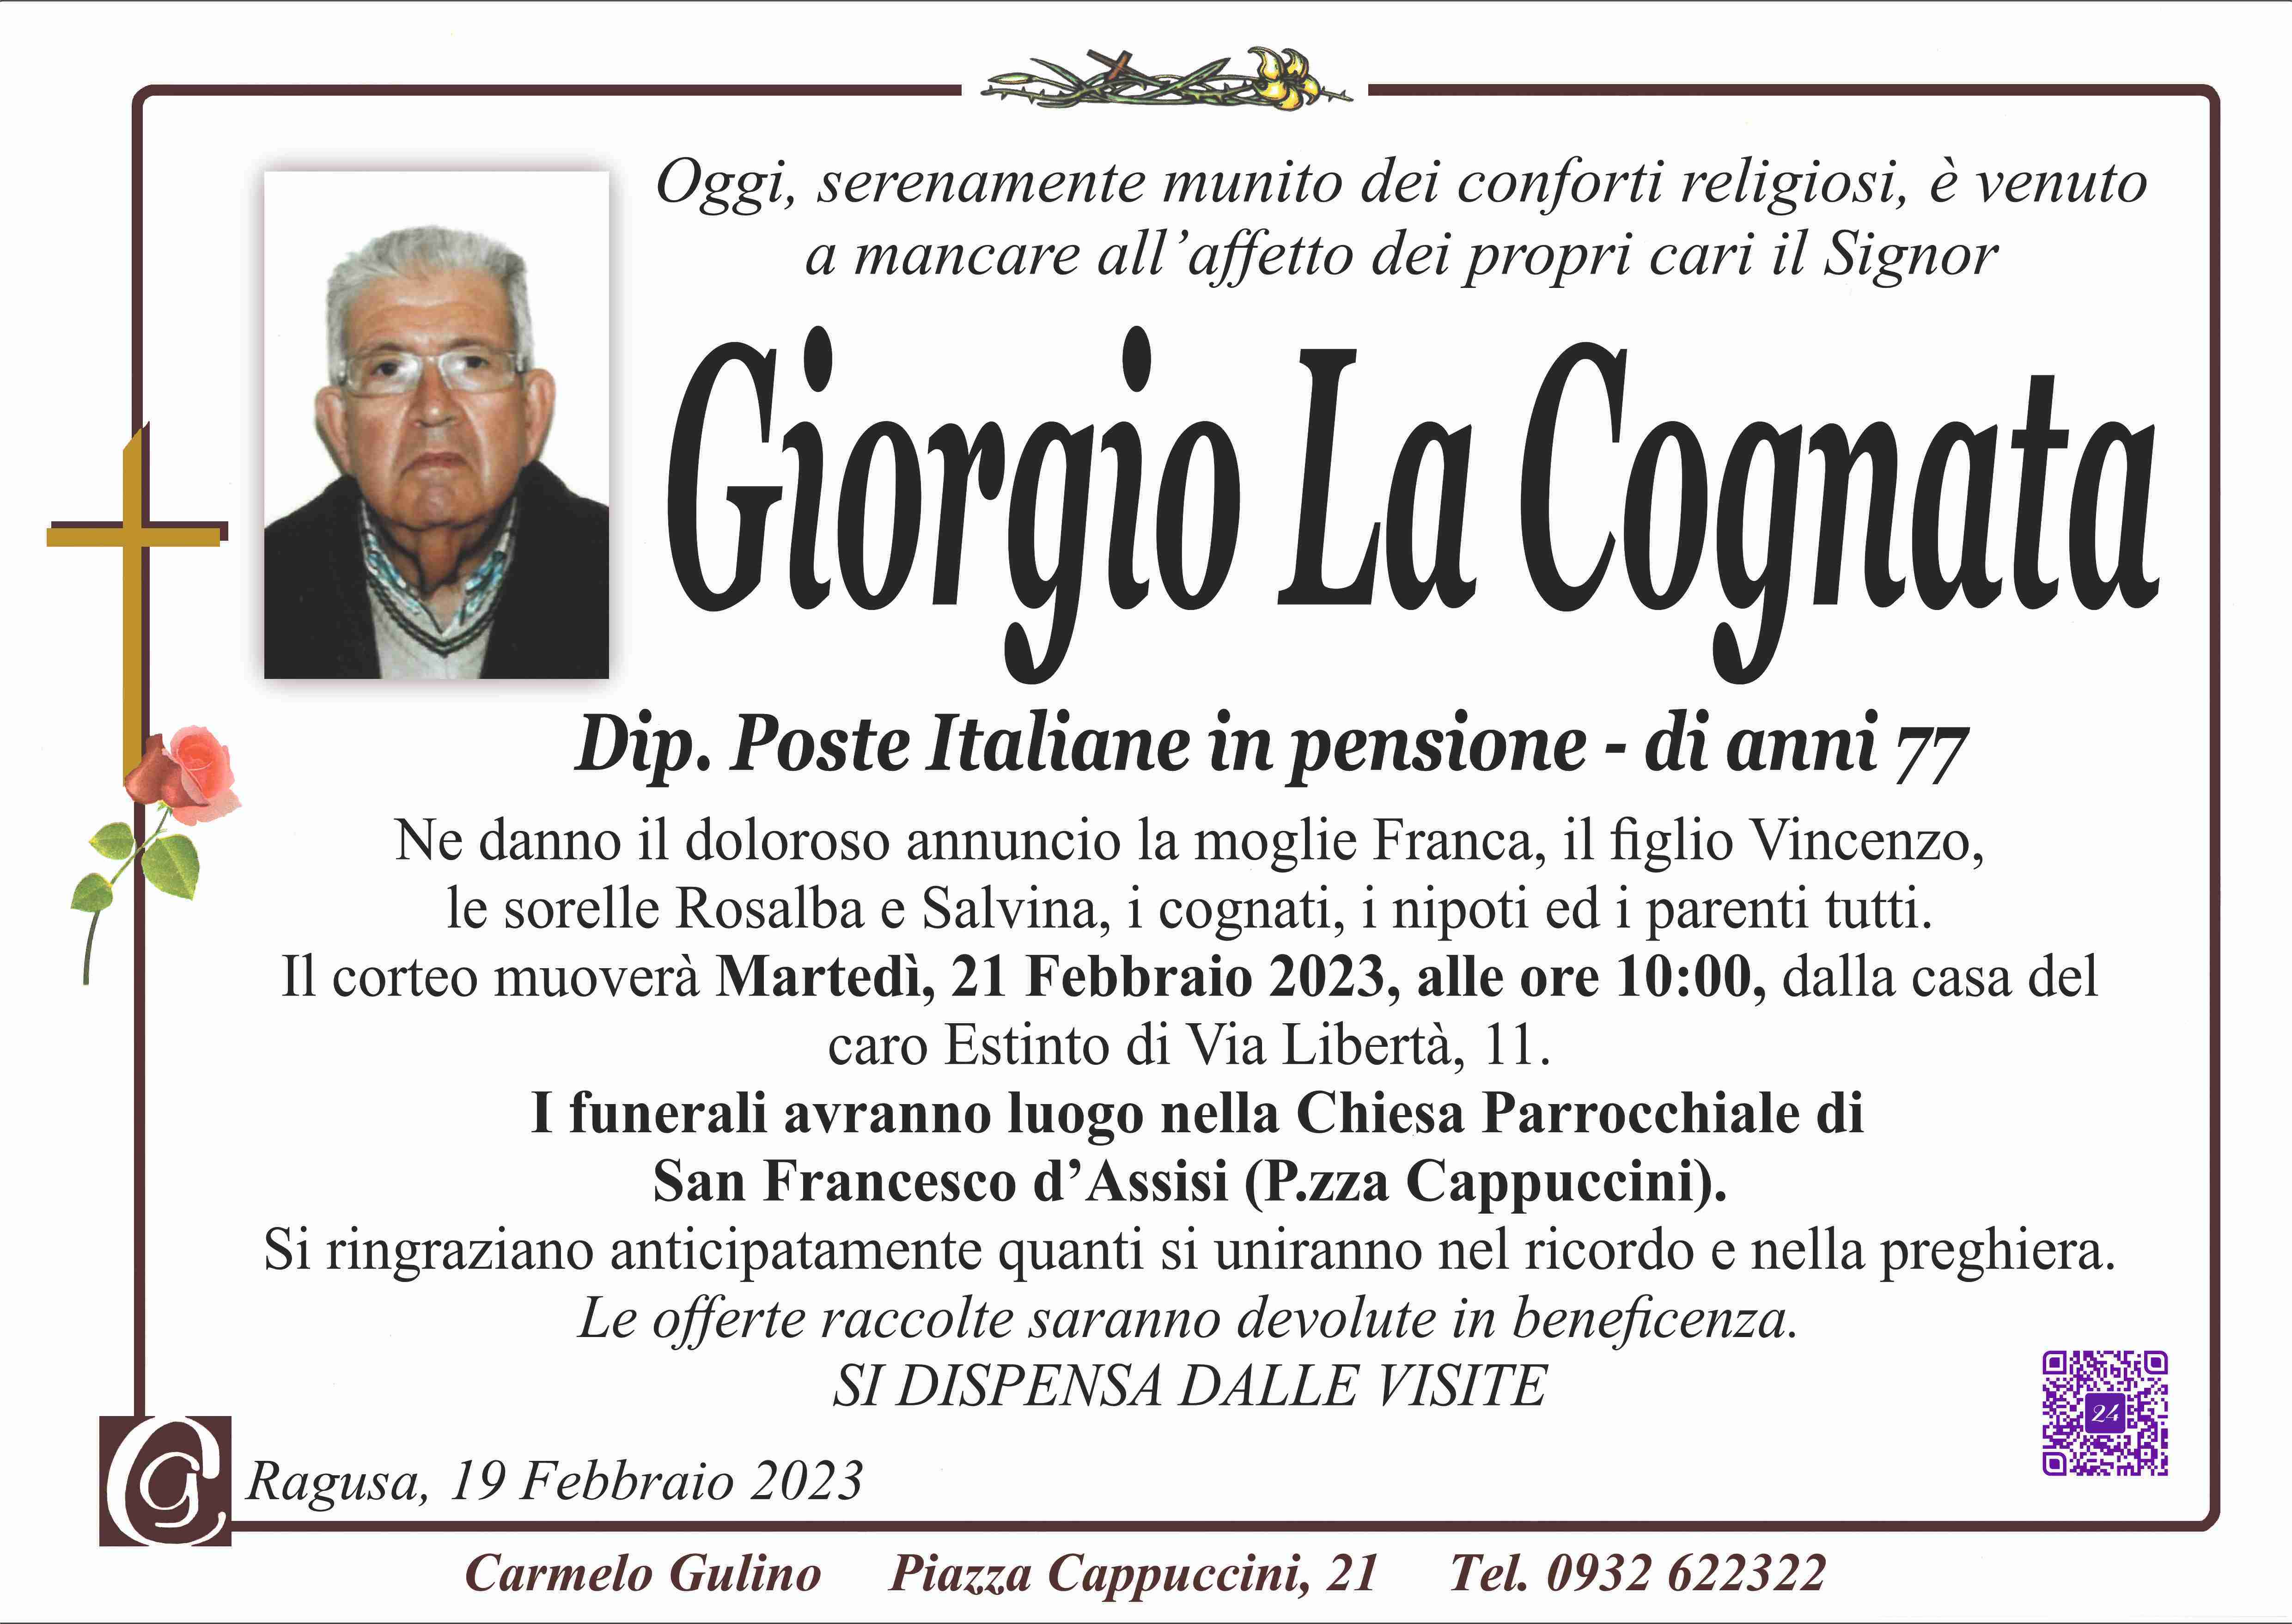 Giorgio La Cognata